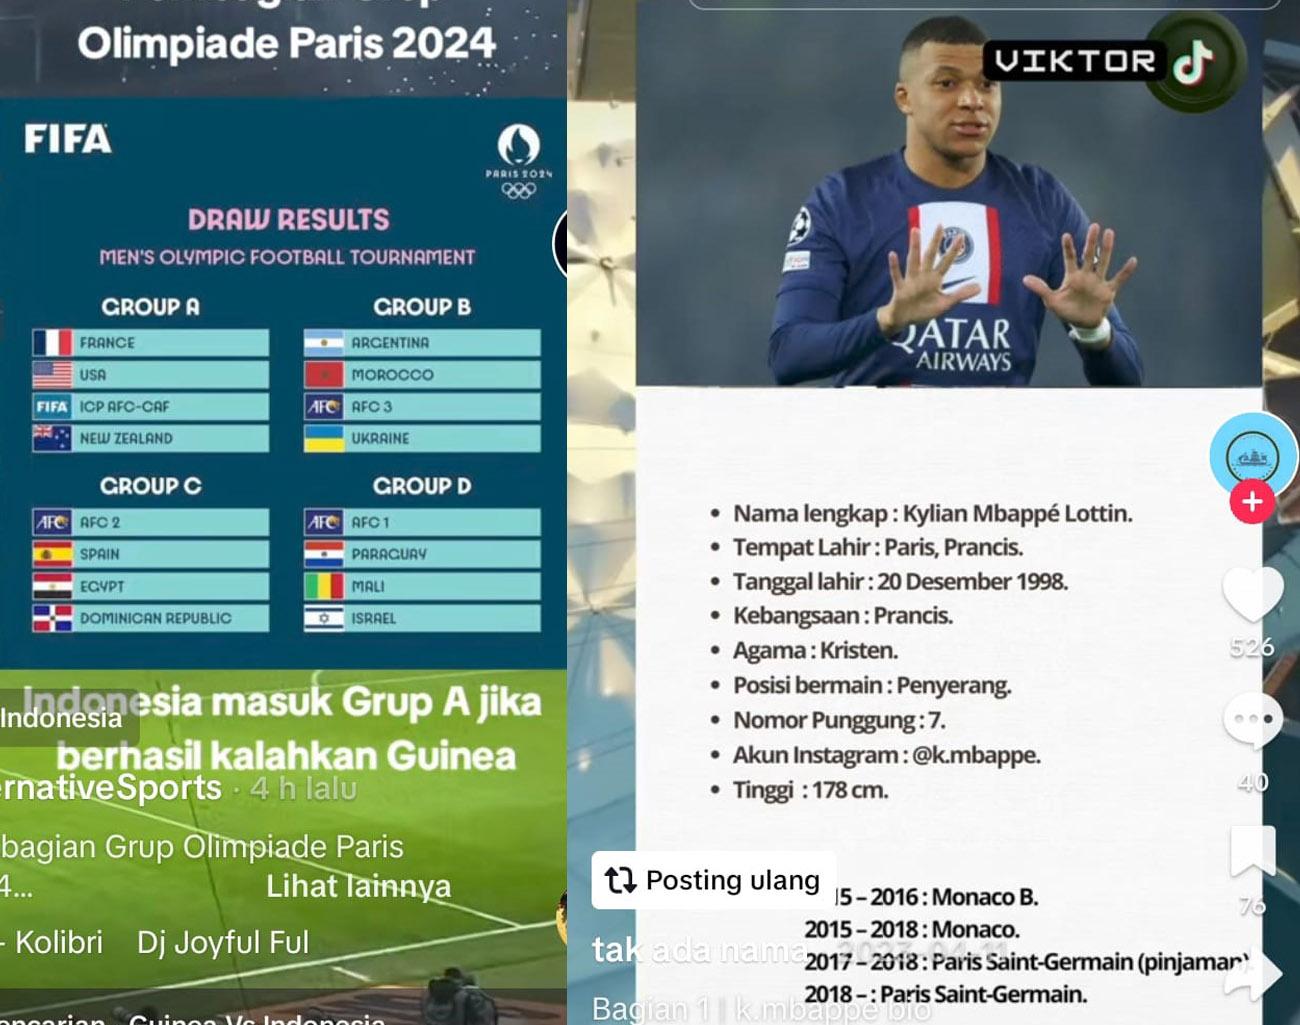 Pemain Termahal Prancis Mbappe Tidak Bermain Lawan Indonesia, Kalahkan Dulu Guinea Play Off Olimpiade Paris